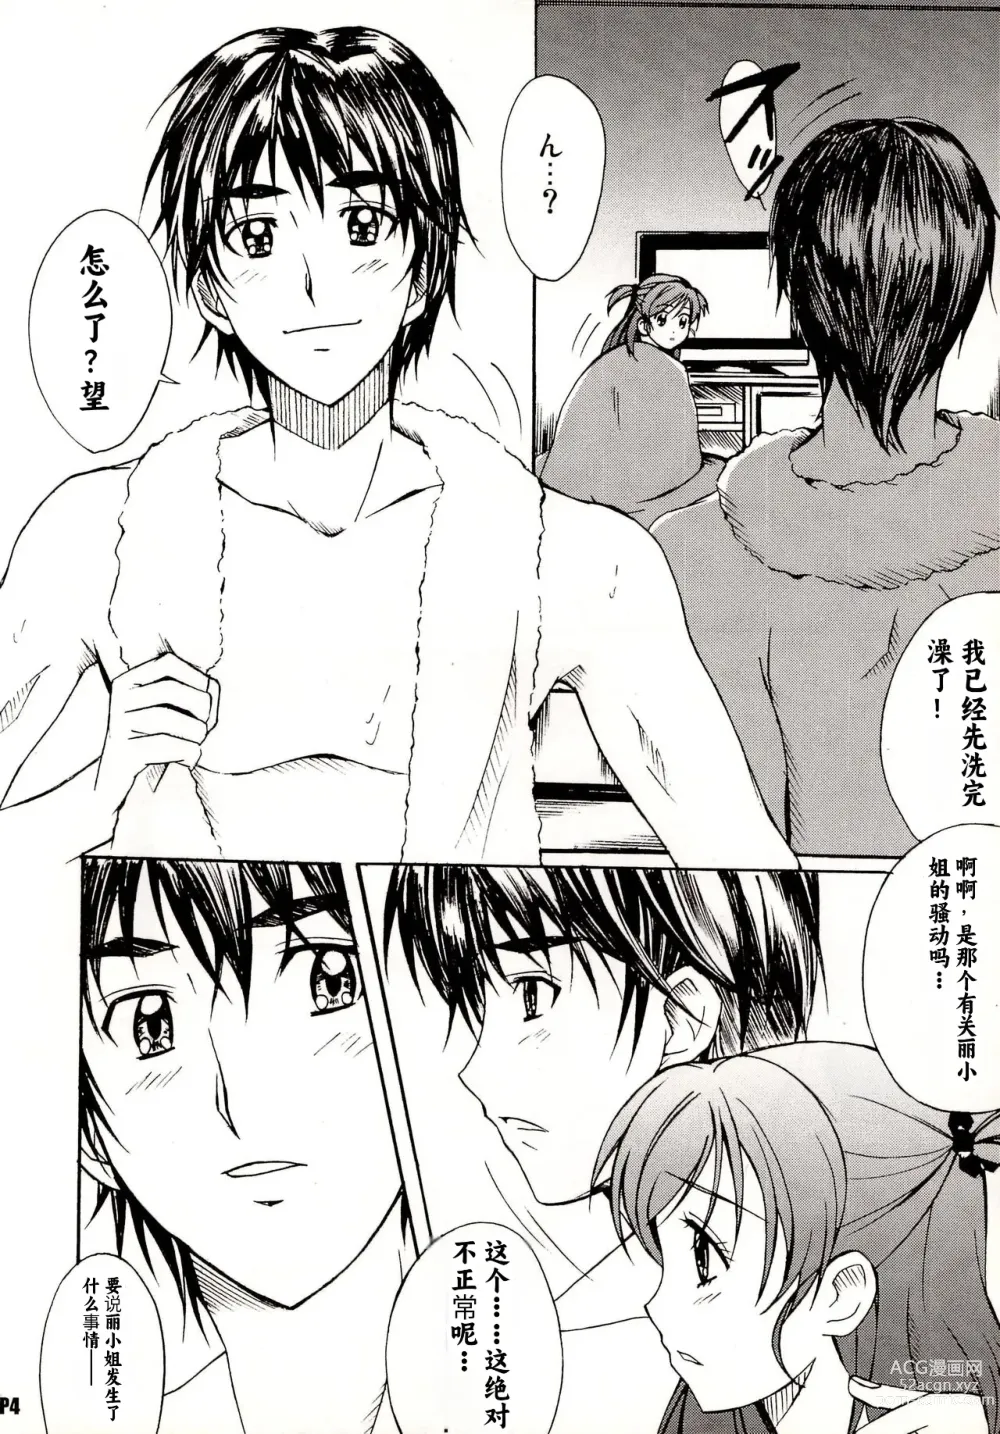 Page 4 of doujinshi Otonanopuri 5